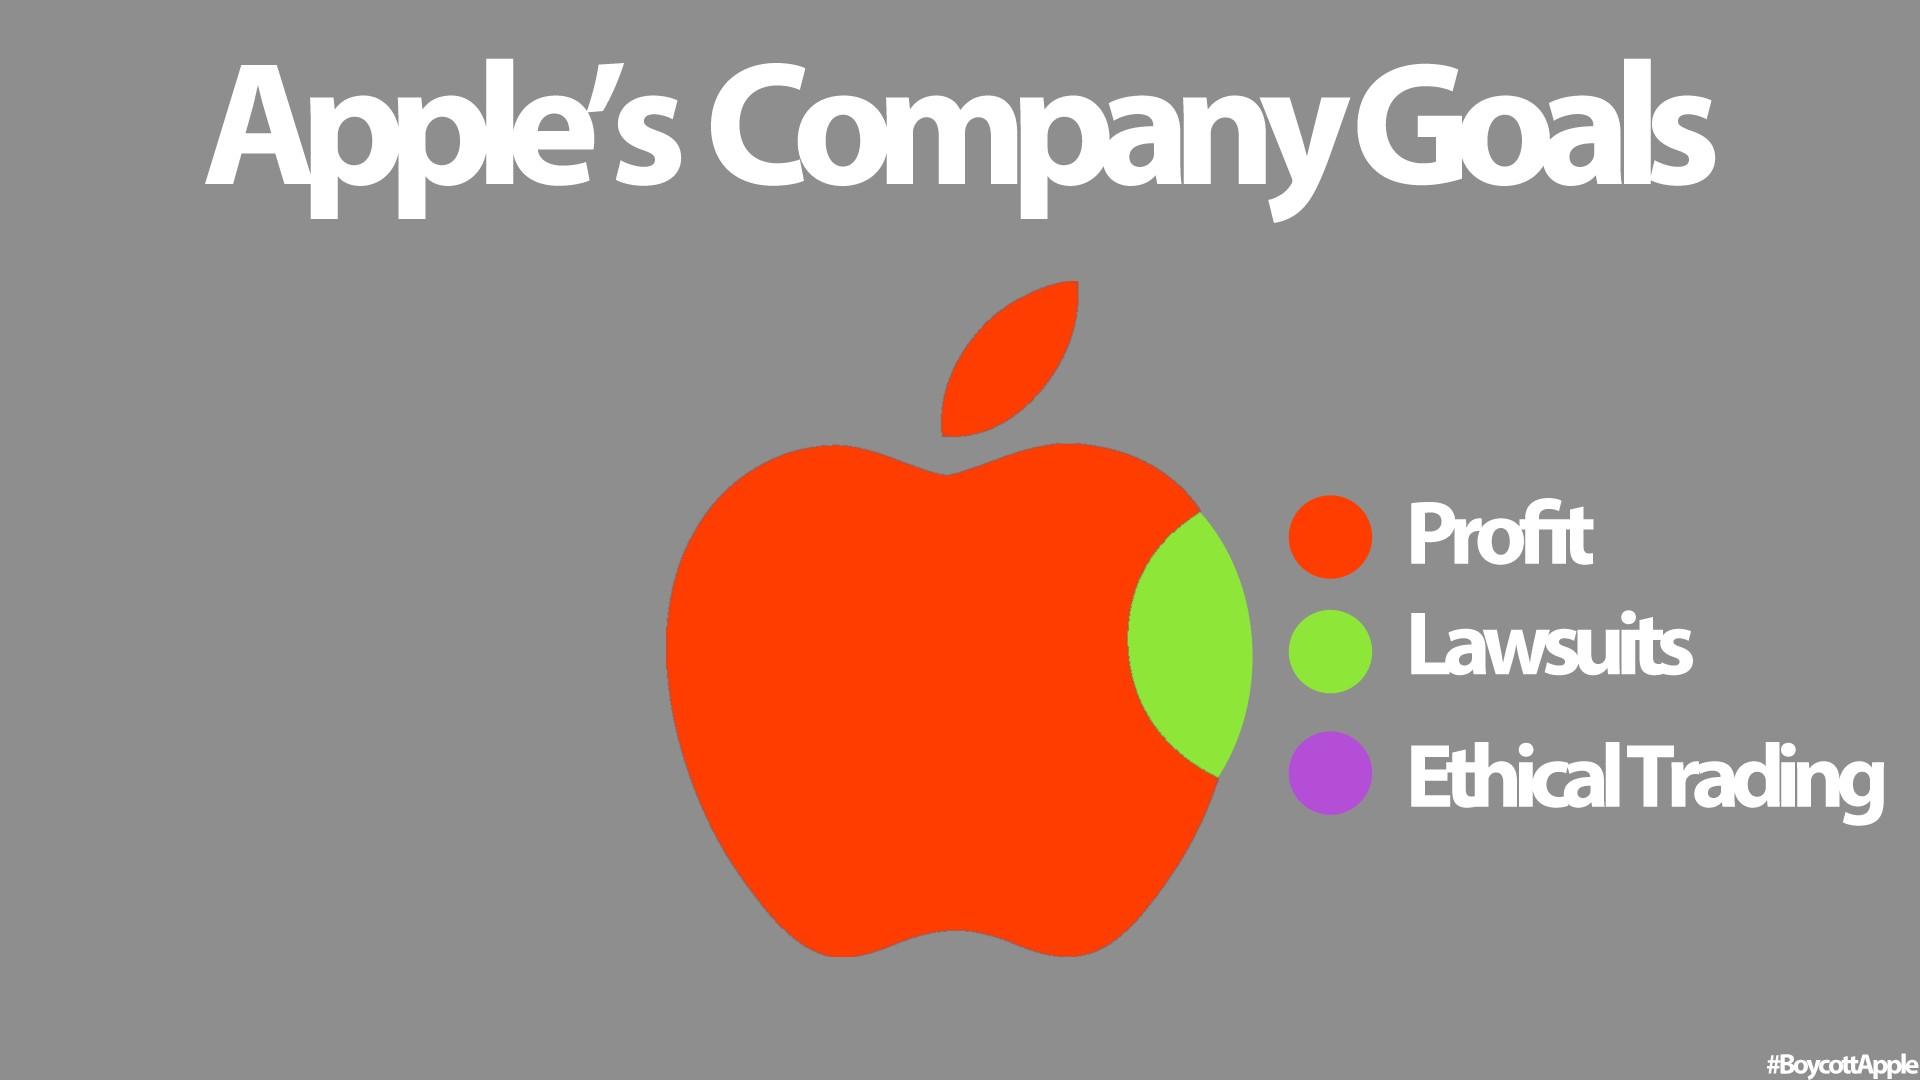 Company goals. Компания Apple. Рекламная компания Apple. Apple лучший. Технология яблоко.